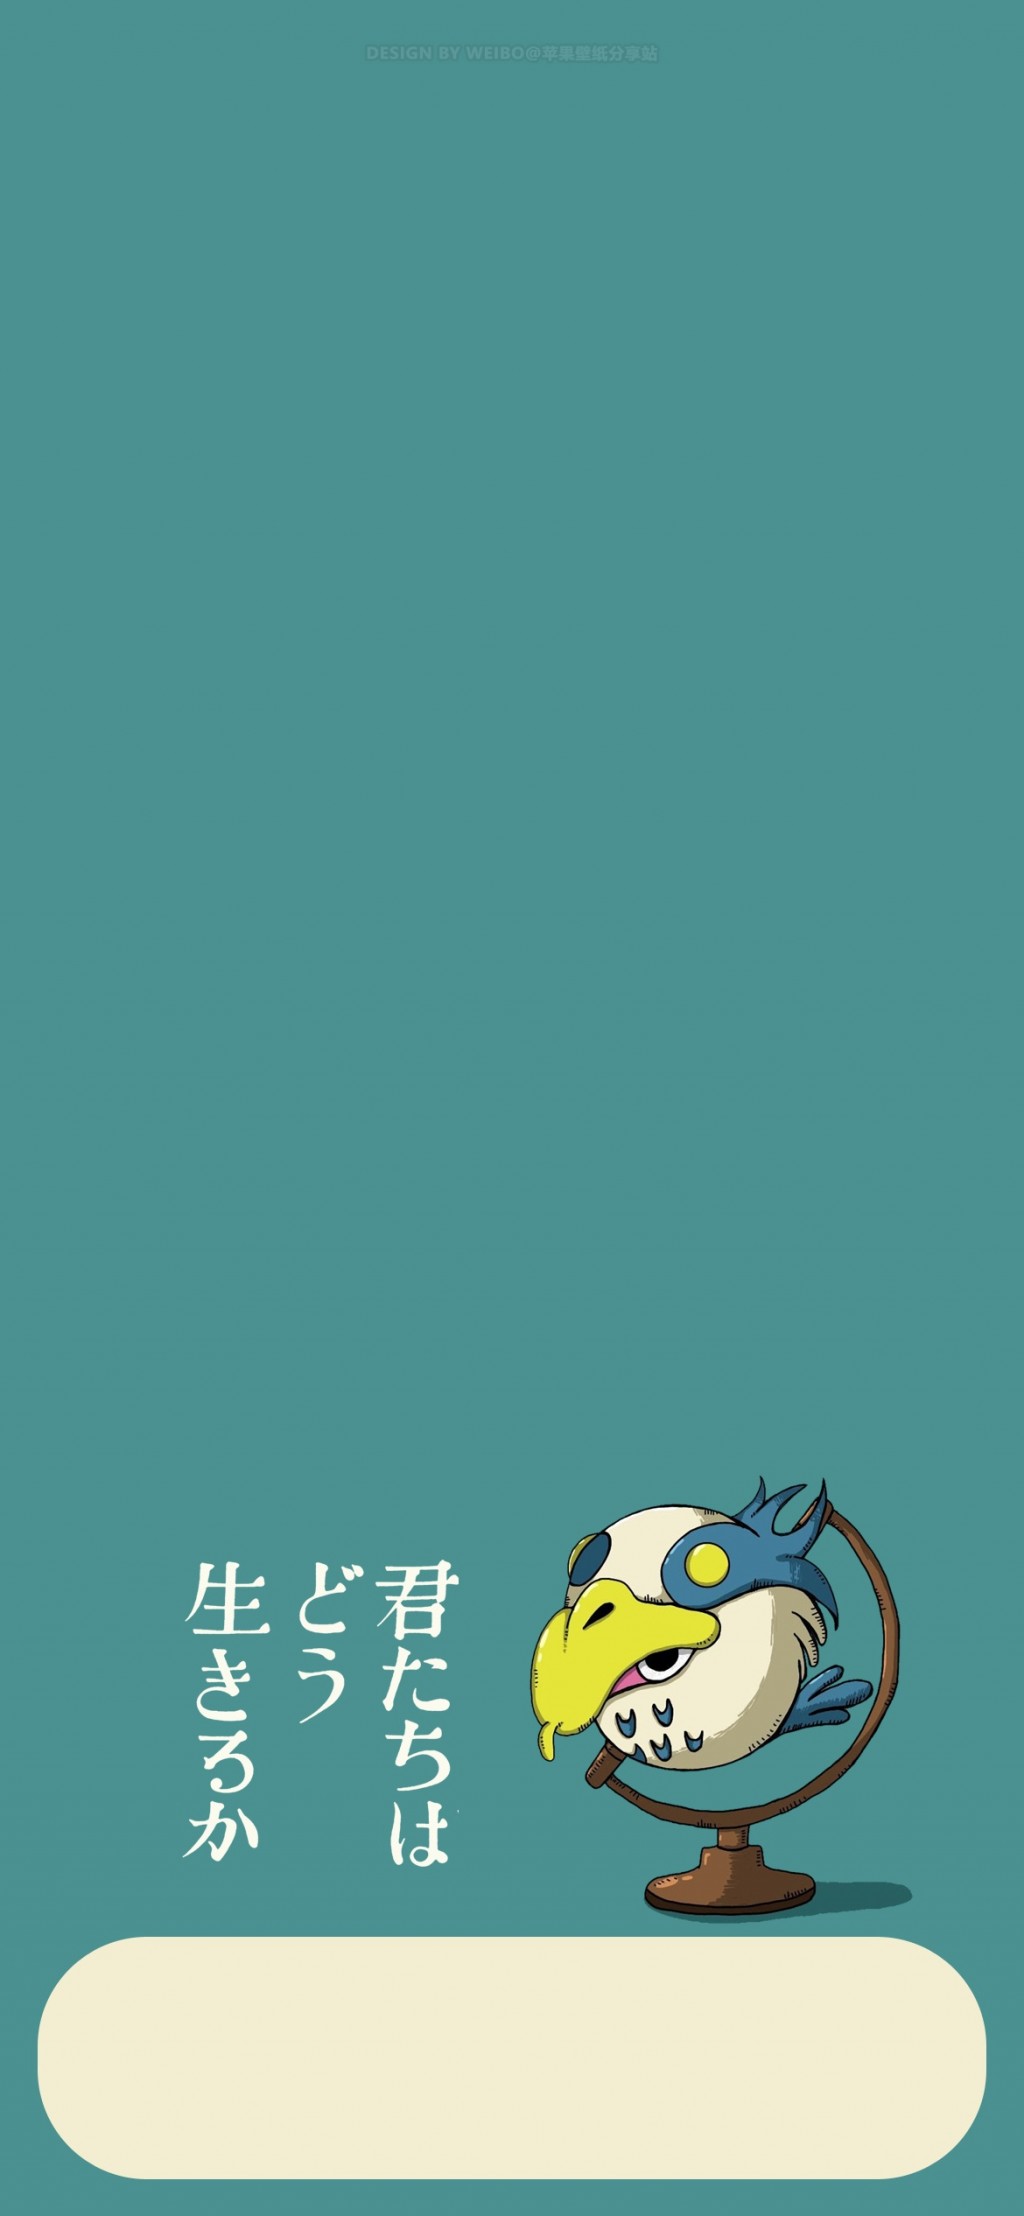 宫崎骏新作《你想活出怎样的人生》动画电影海报手机壁纸